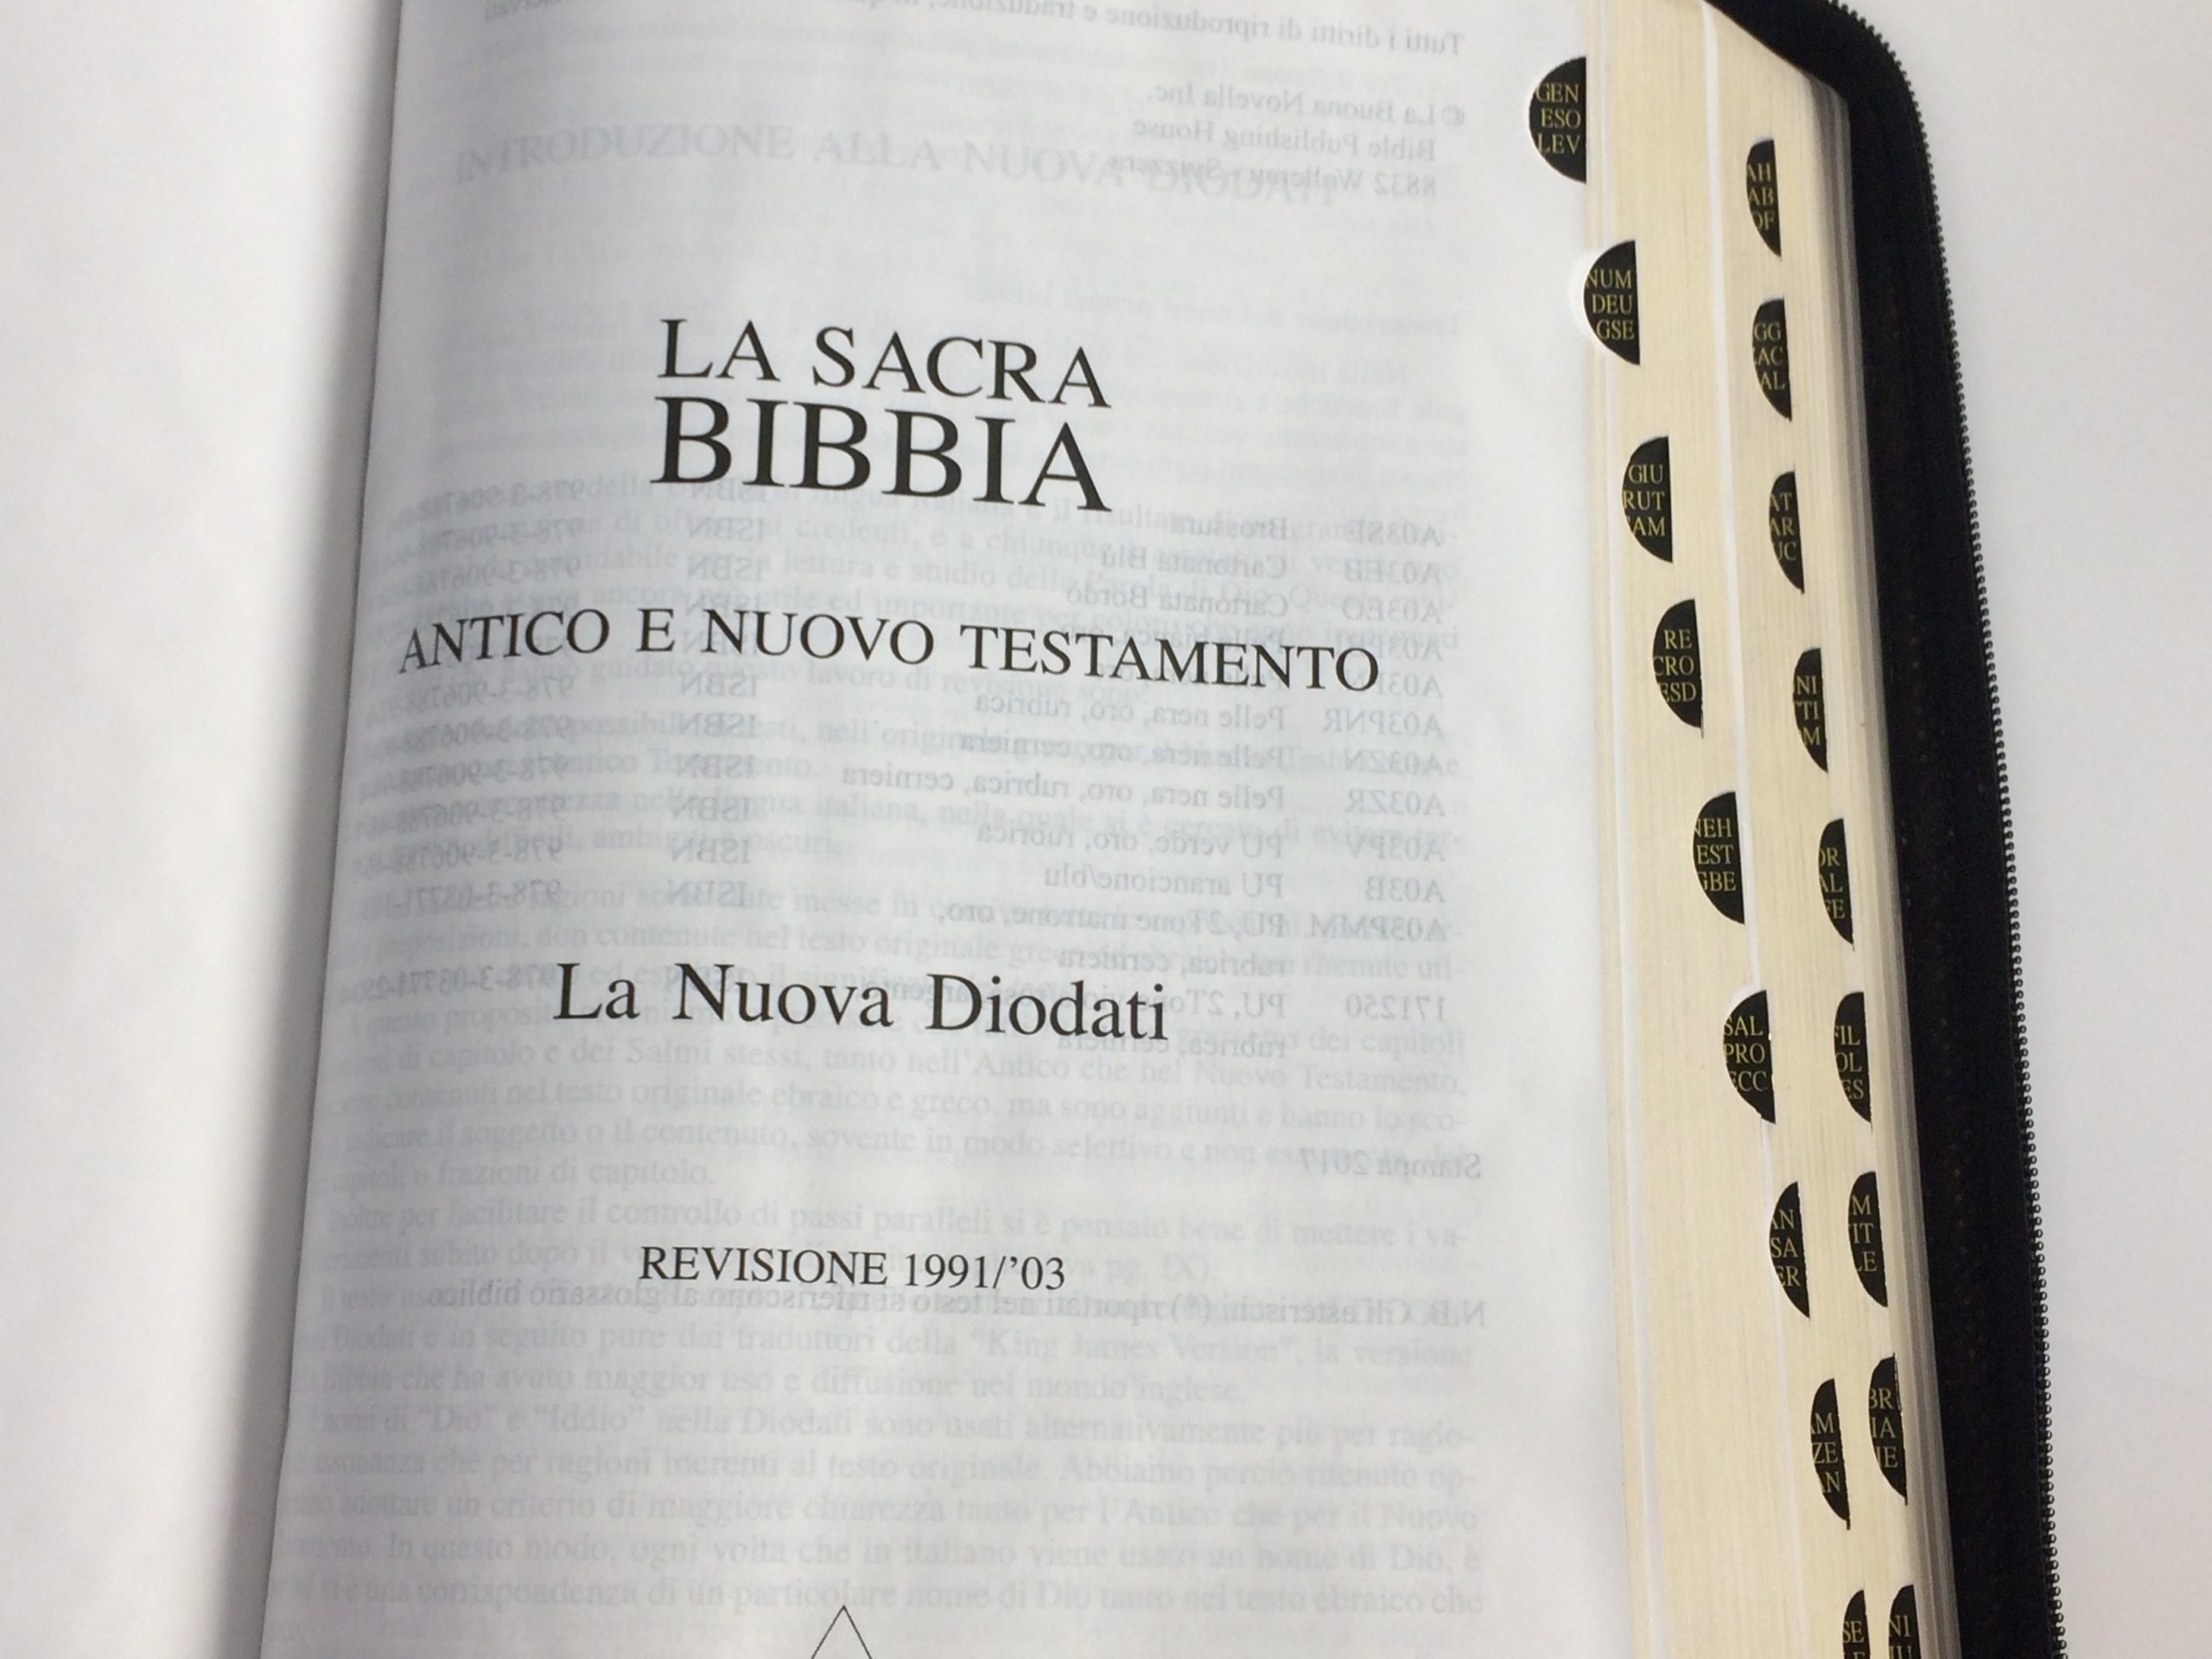 Bibbia Nuova Dio Dati, Duotone Marrone/Cuoio